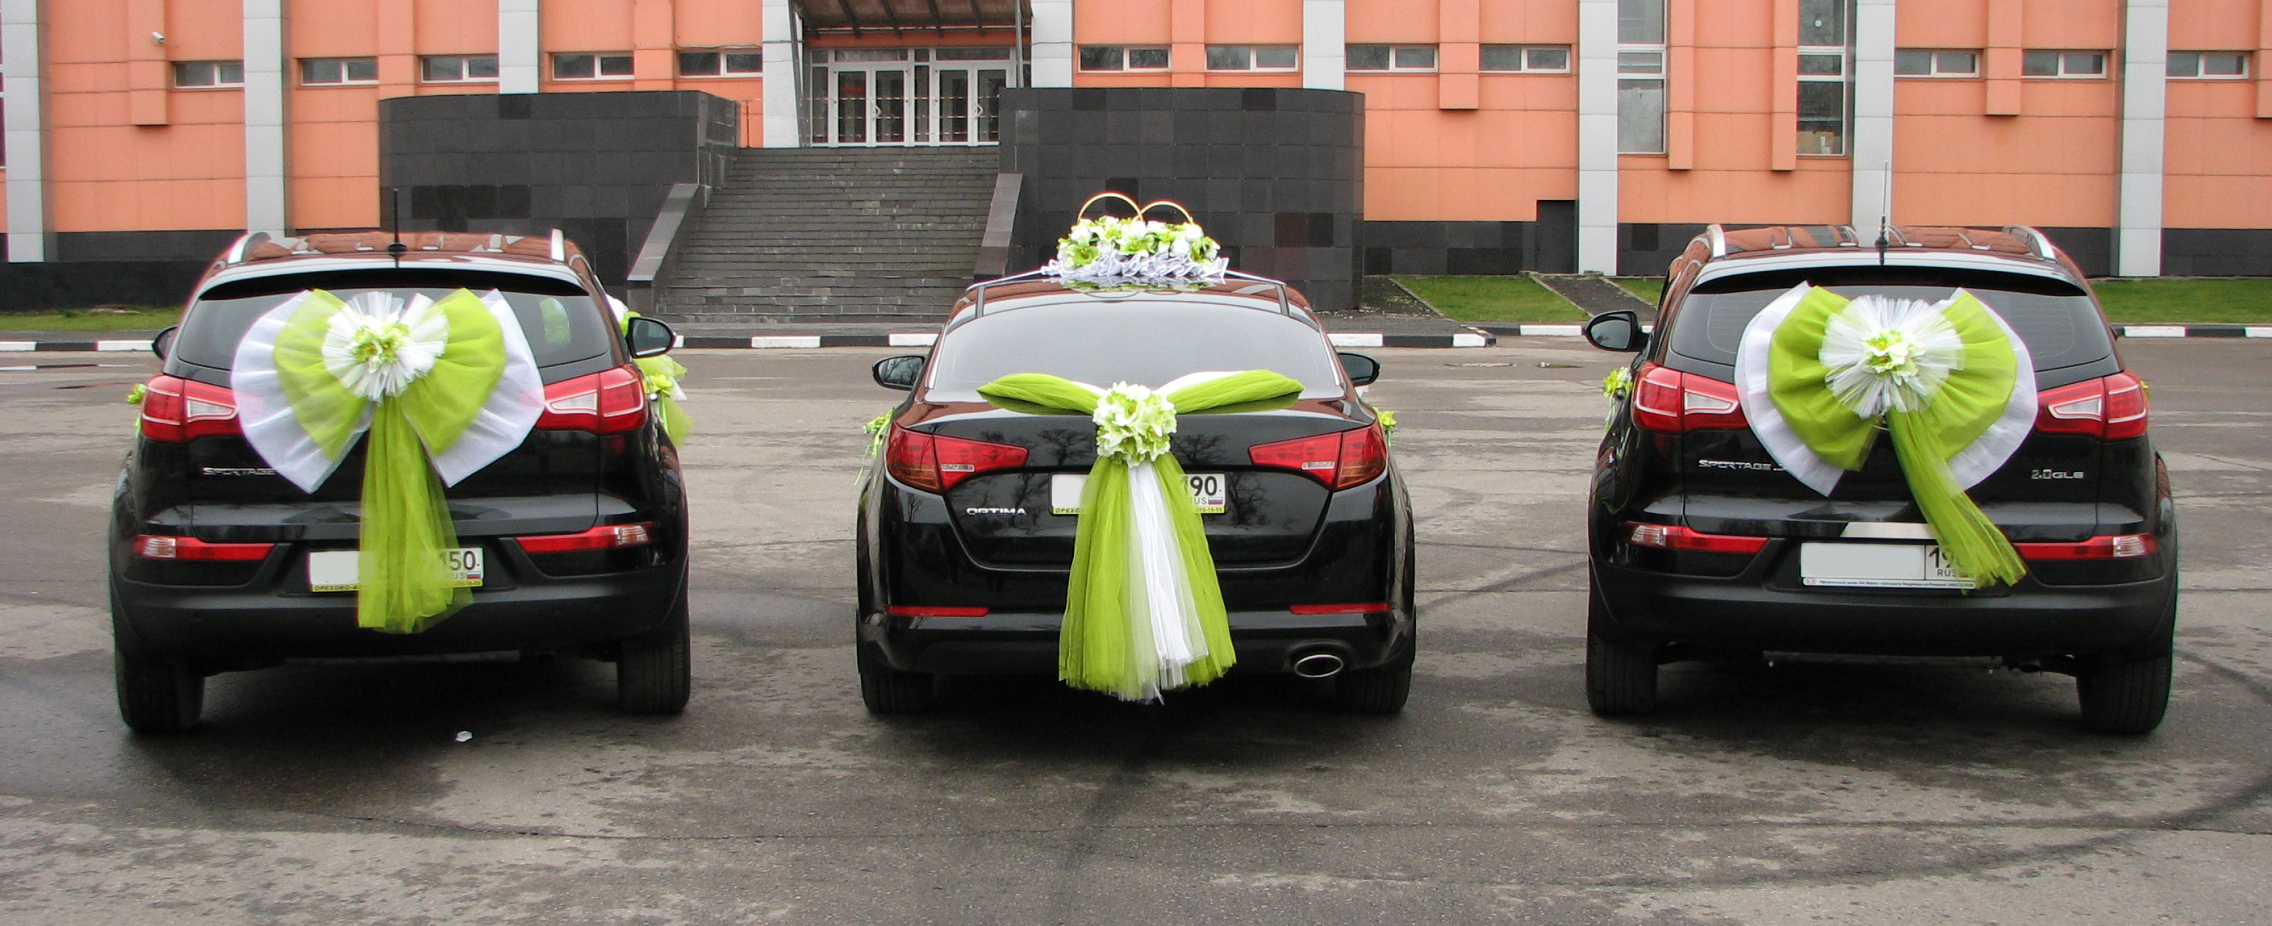 Украшение машины багажника на свадьбу своими руками